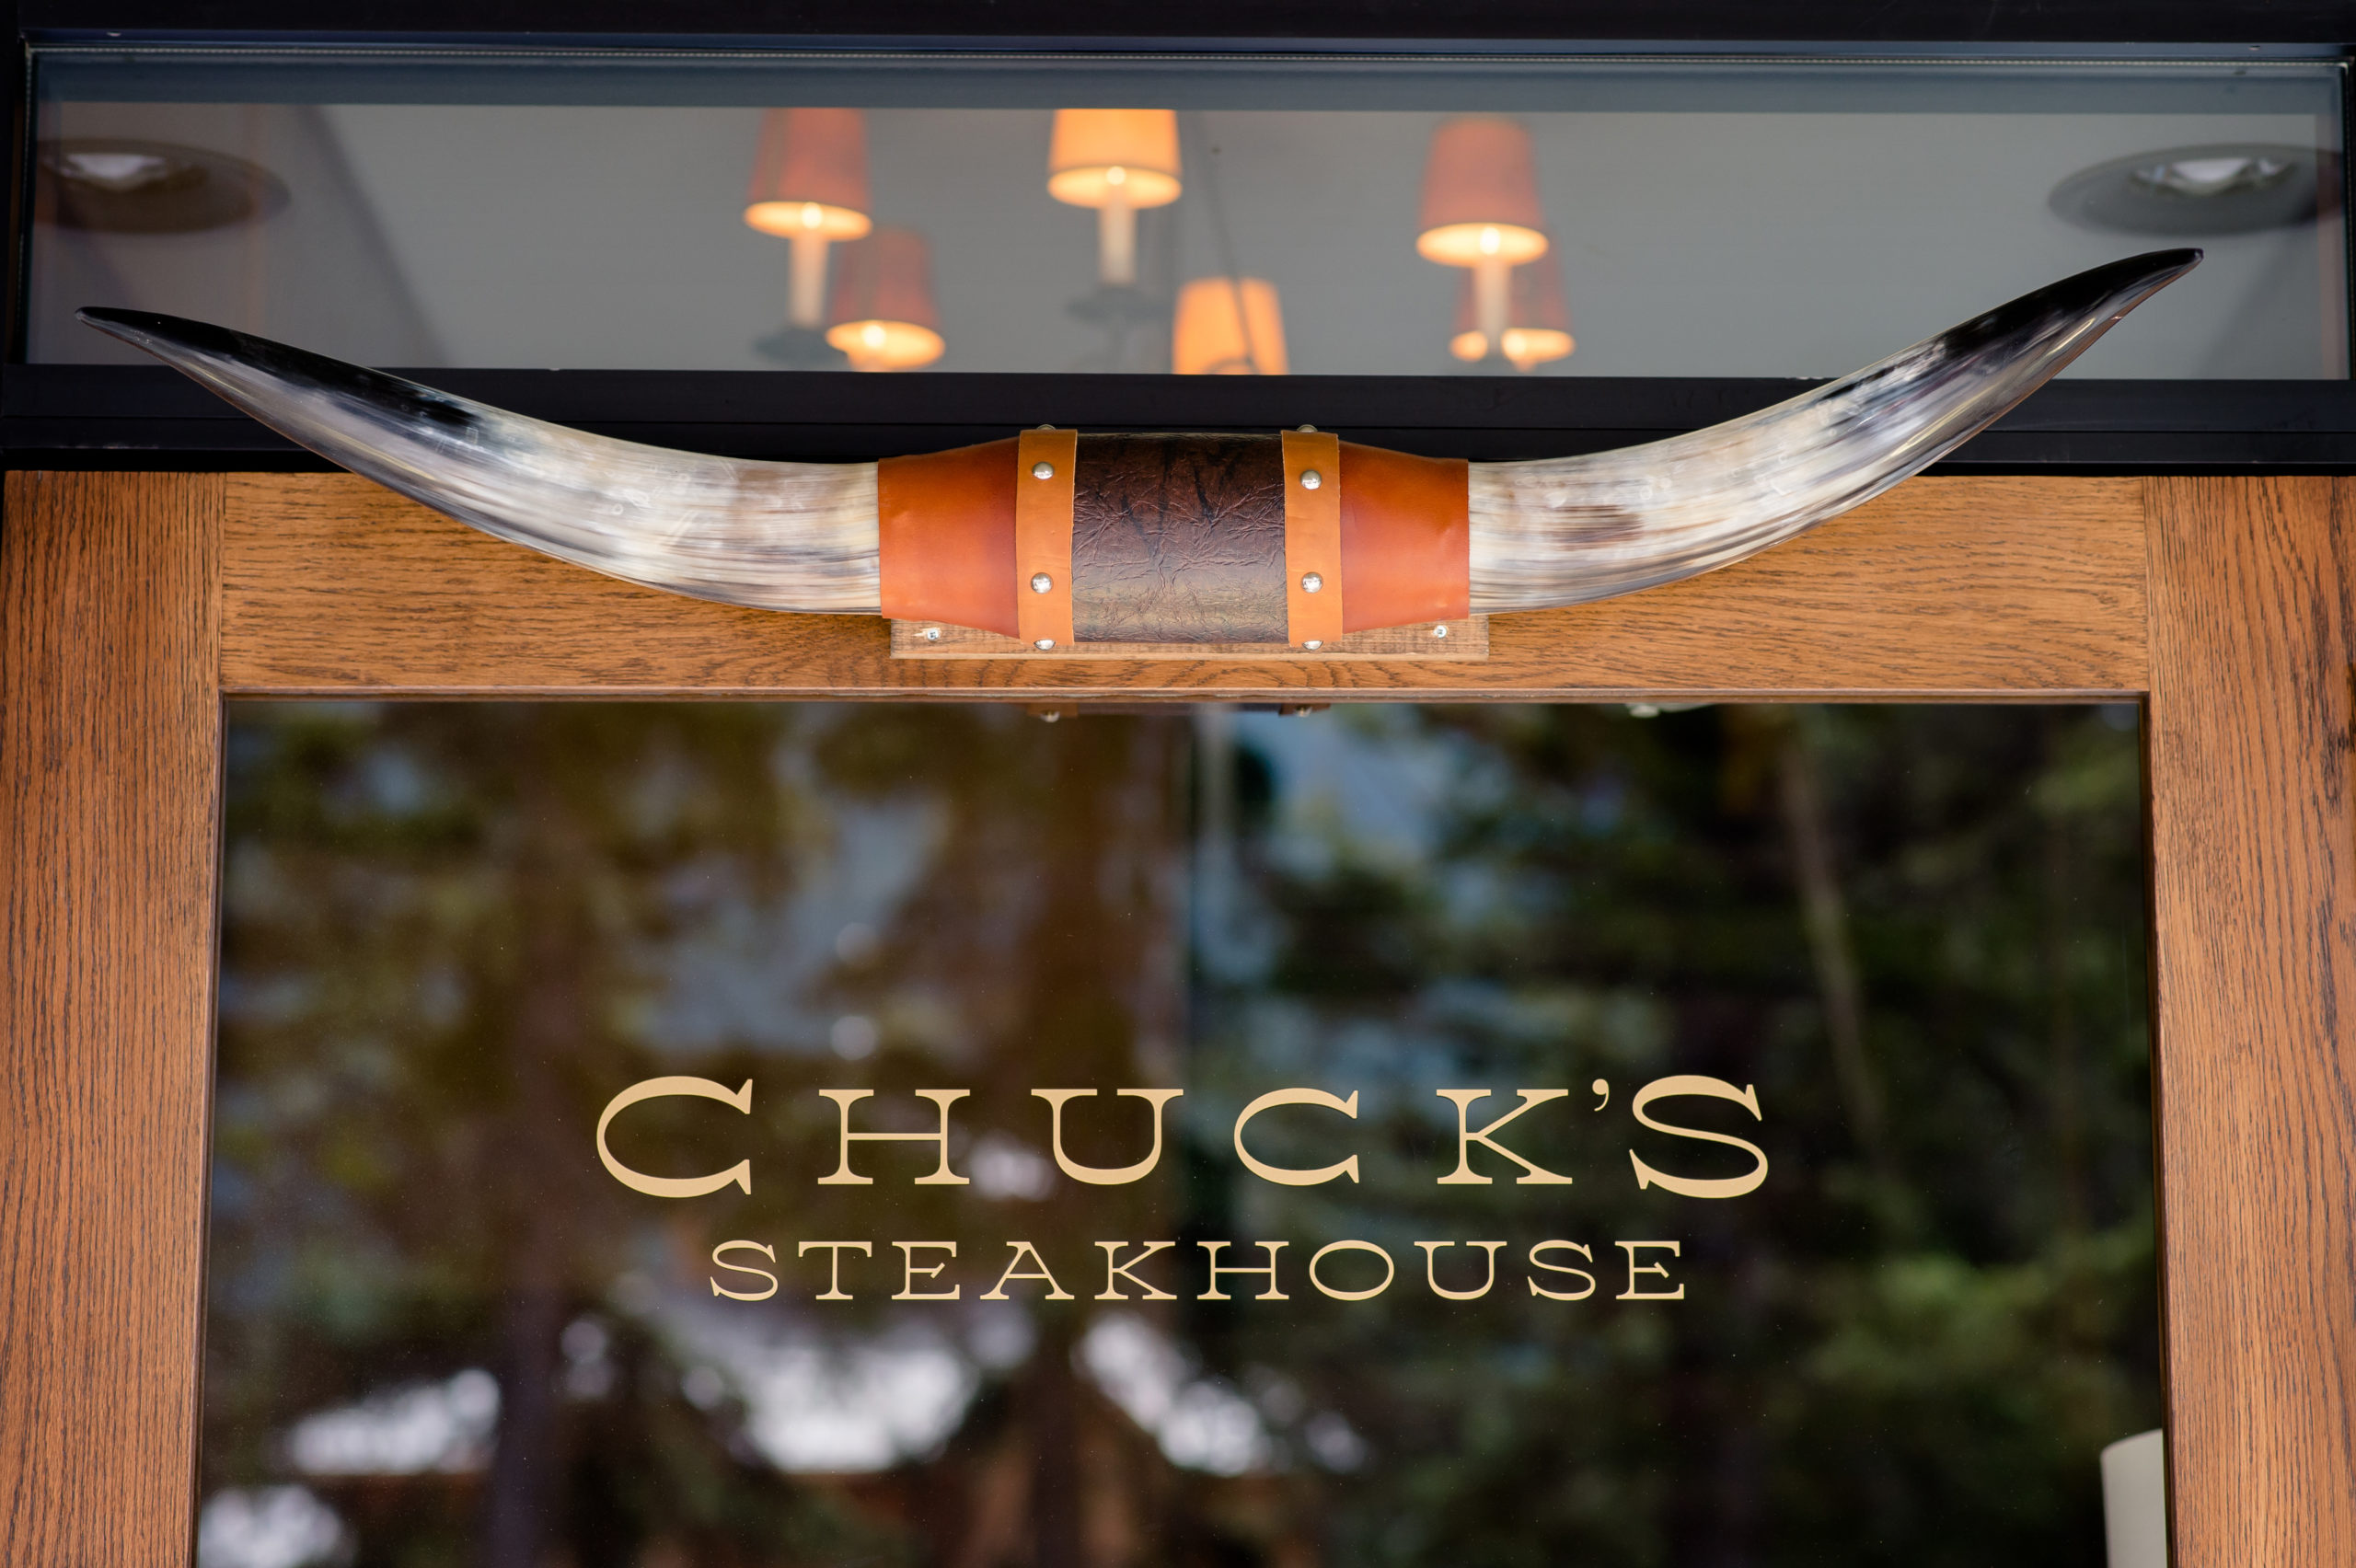 Chucks Steakhouse Entrance